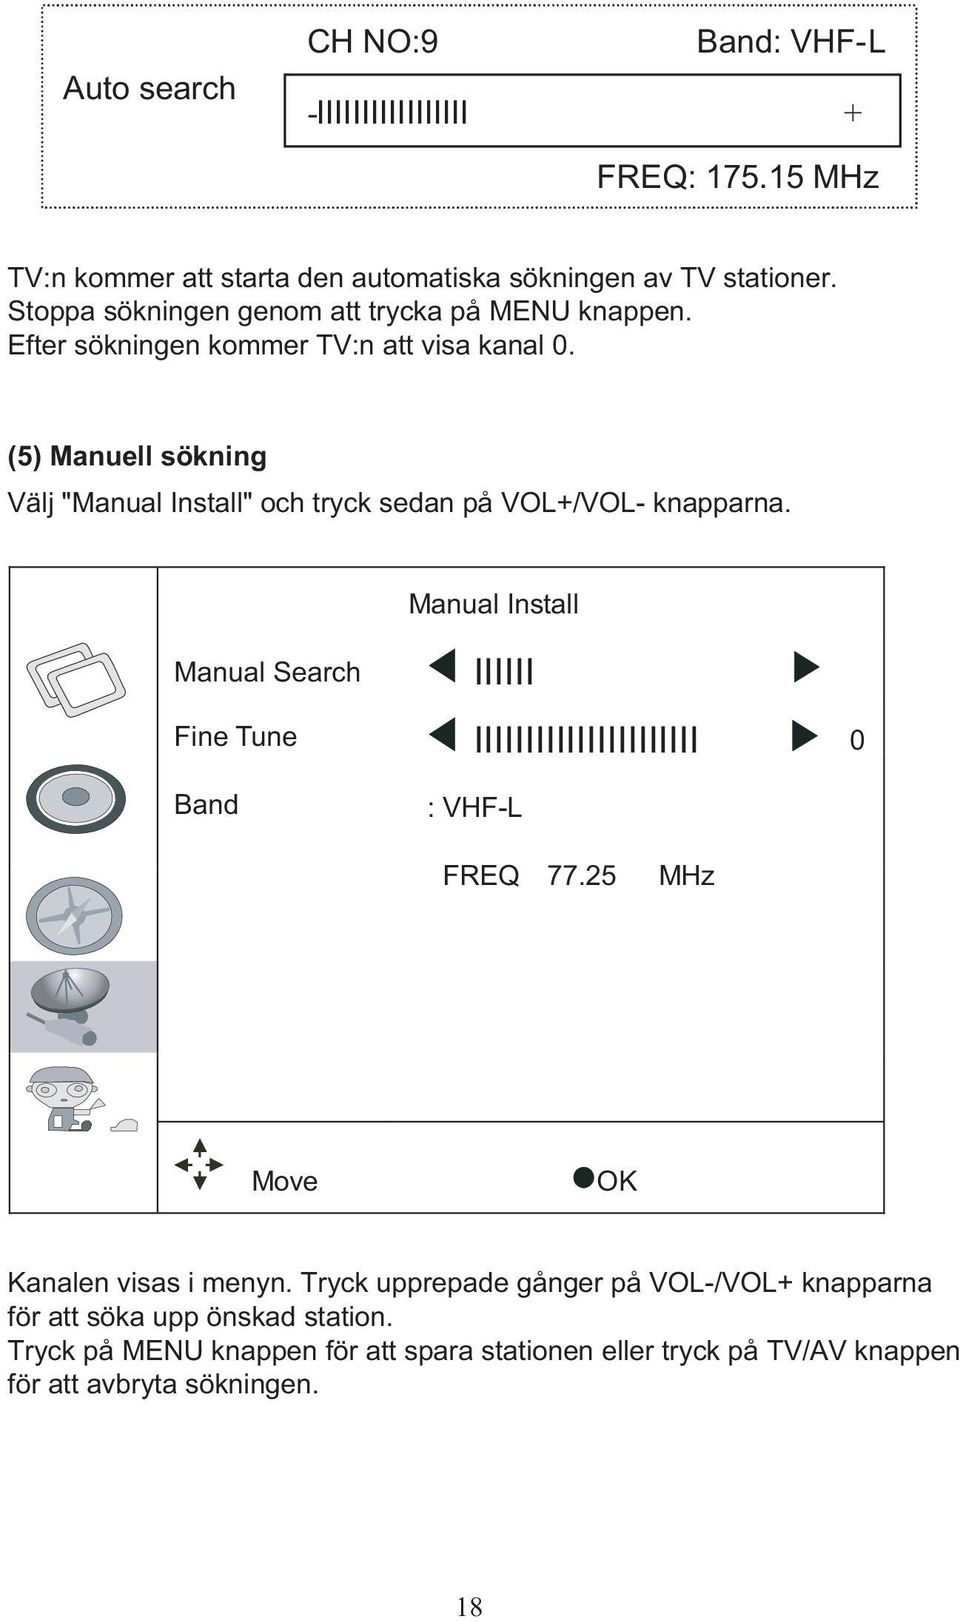 (5) Manuell sökning Välj "Manual Install" och tryck sedan på VOL+/VOL- knapparna.